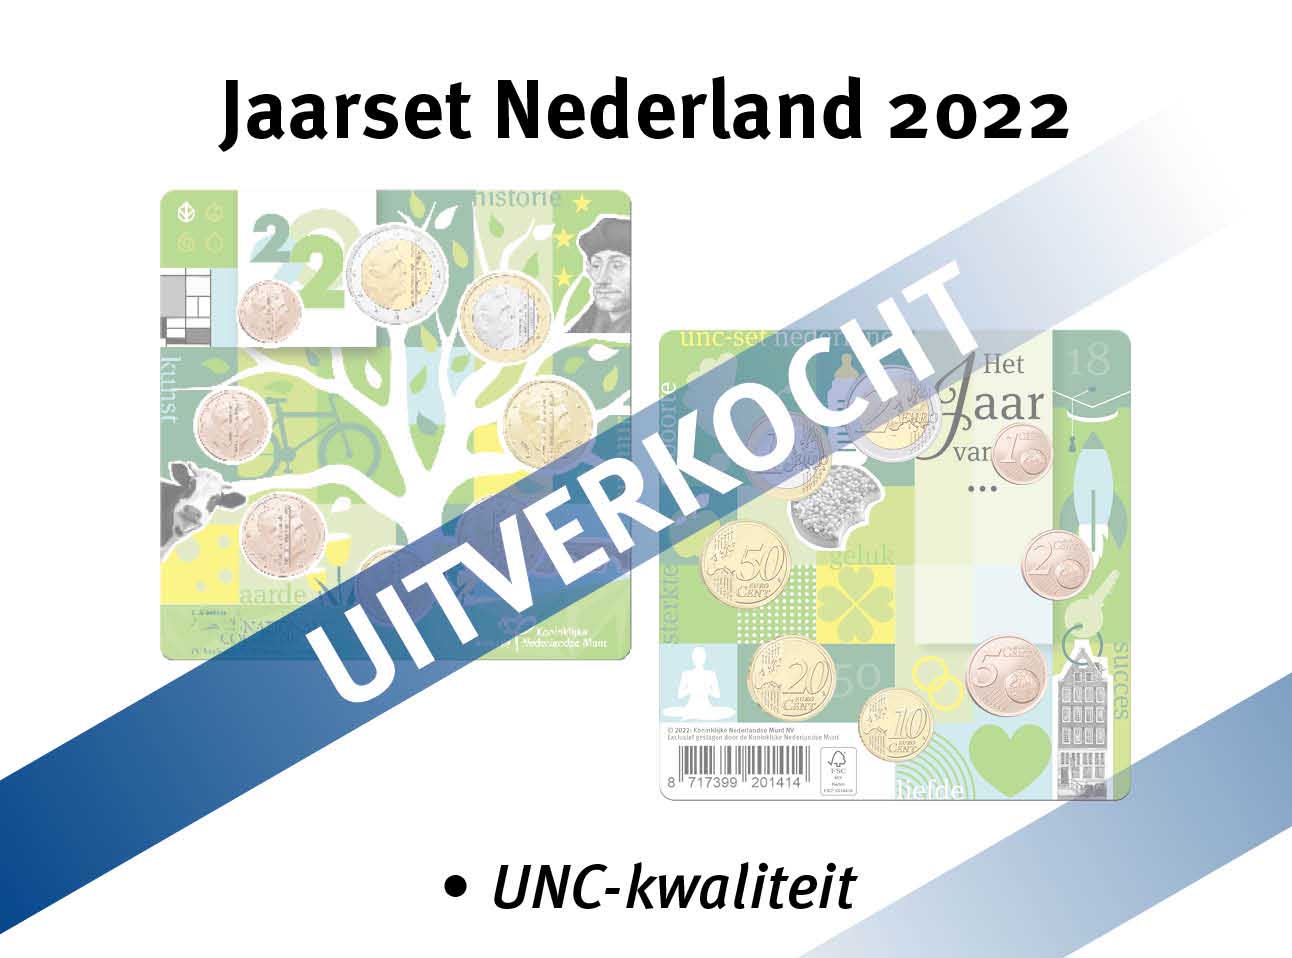 bekijk en bestel: Jaarset nederland 2022